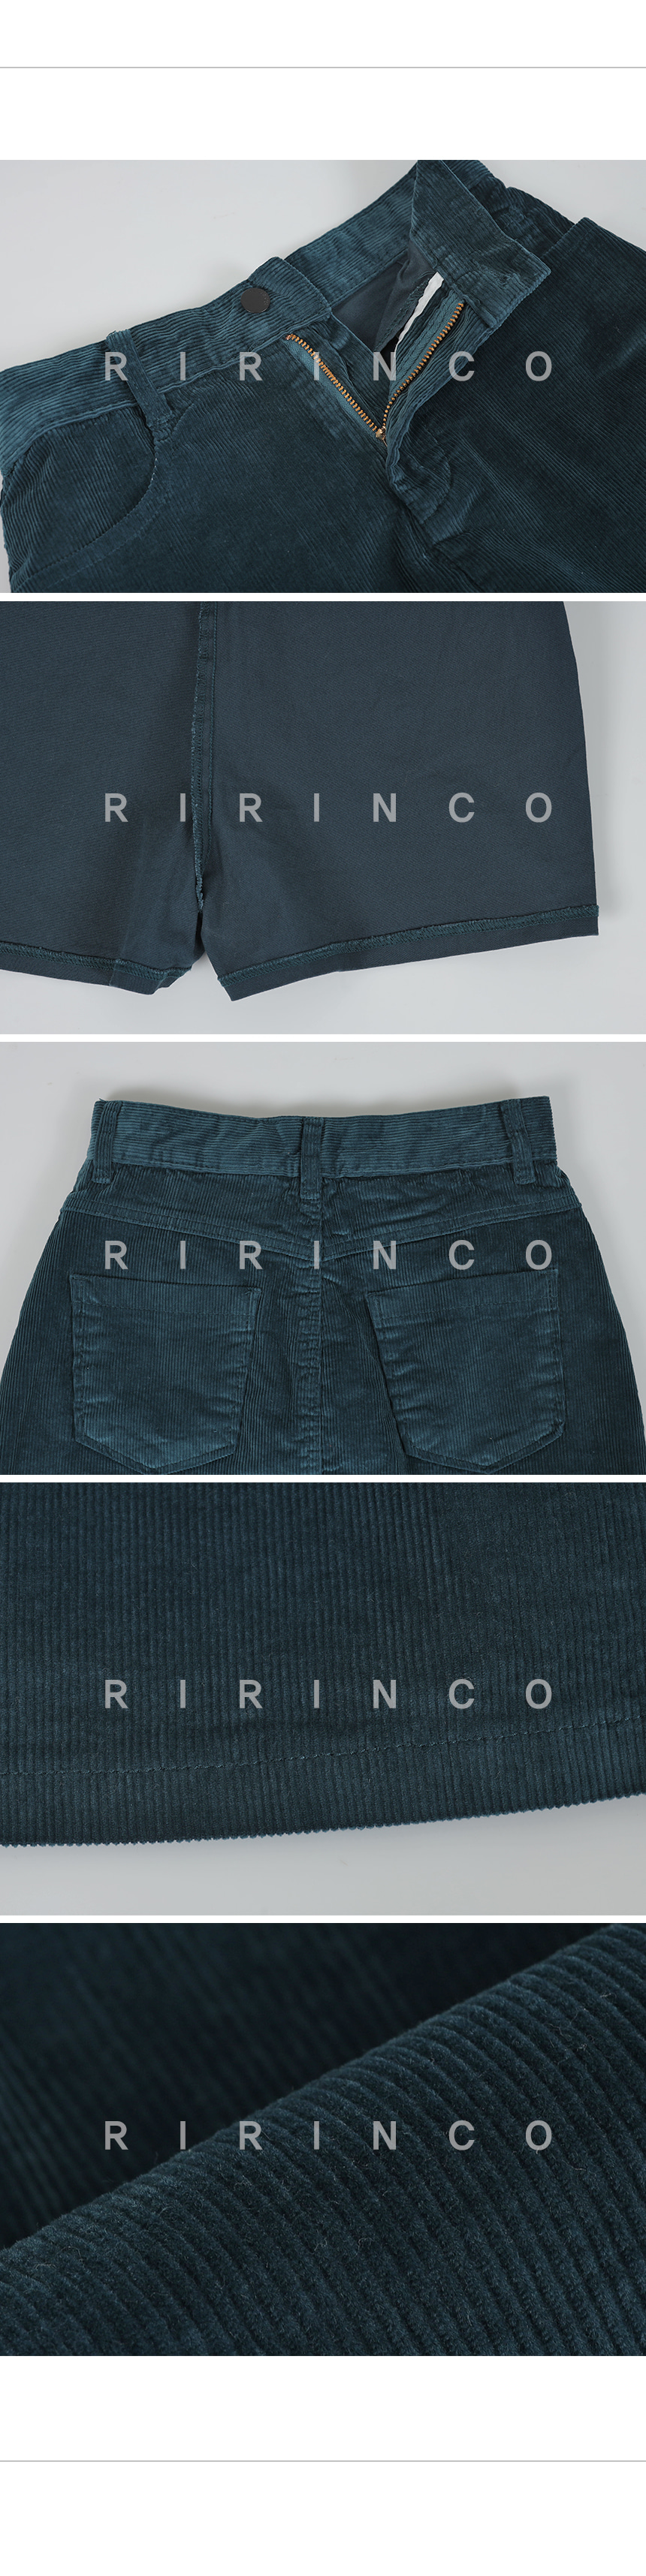 RIRINCO コーデュロイショットスカートパンツ